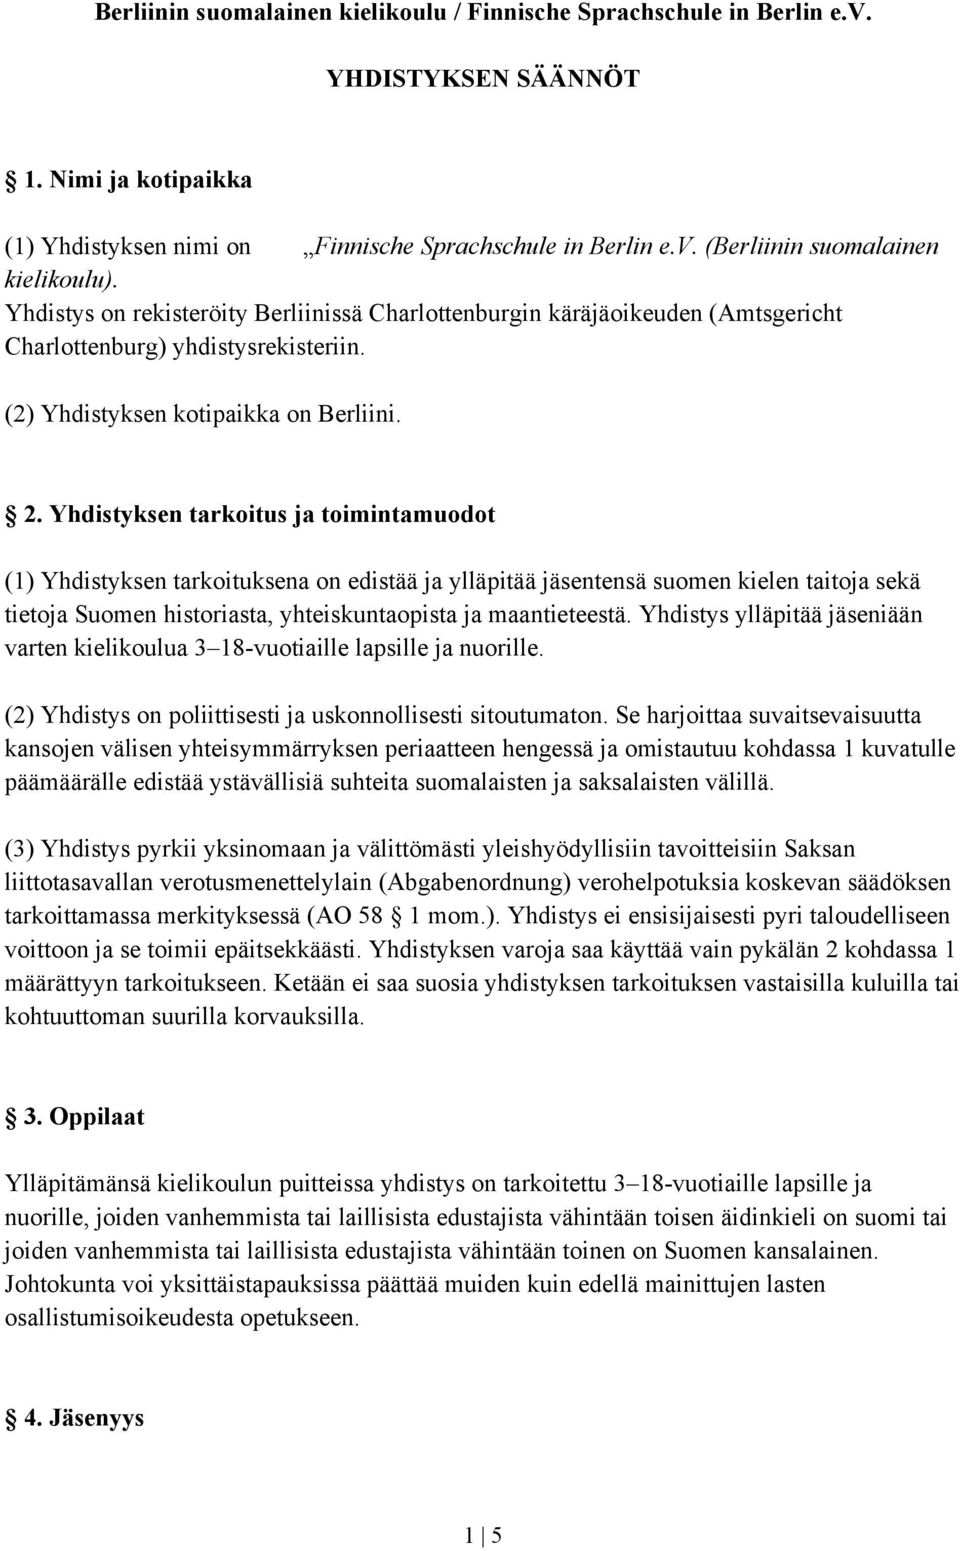 Yhdistyksen tarkoitus ja toimintamuodot (1) Yhdistyksen tarkoituksena on edistää ja ylläpitää jäsentensä suomen kielen taitoja sekä tietoja Suomen historiasta, yhteiskuntaopista ja maantieteestä.